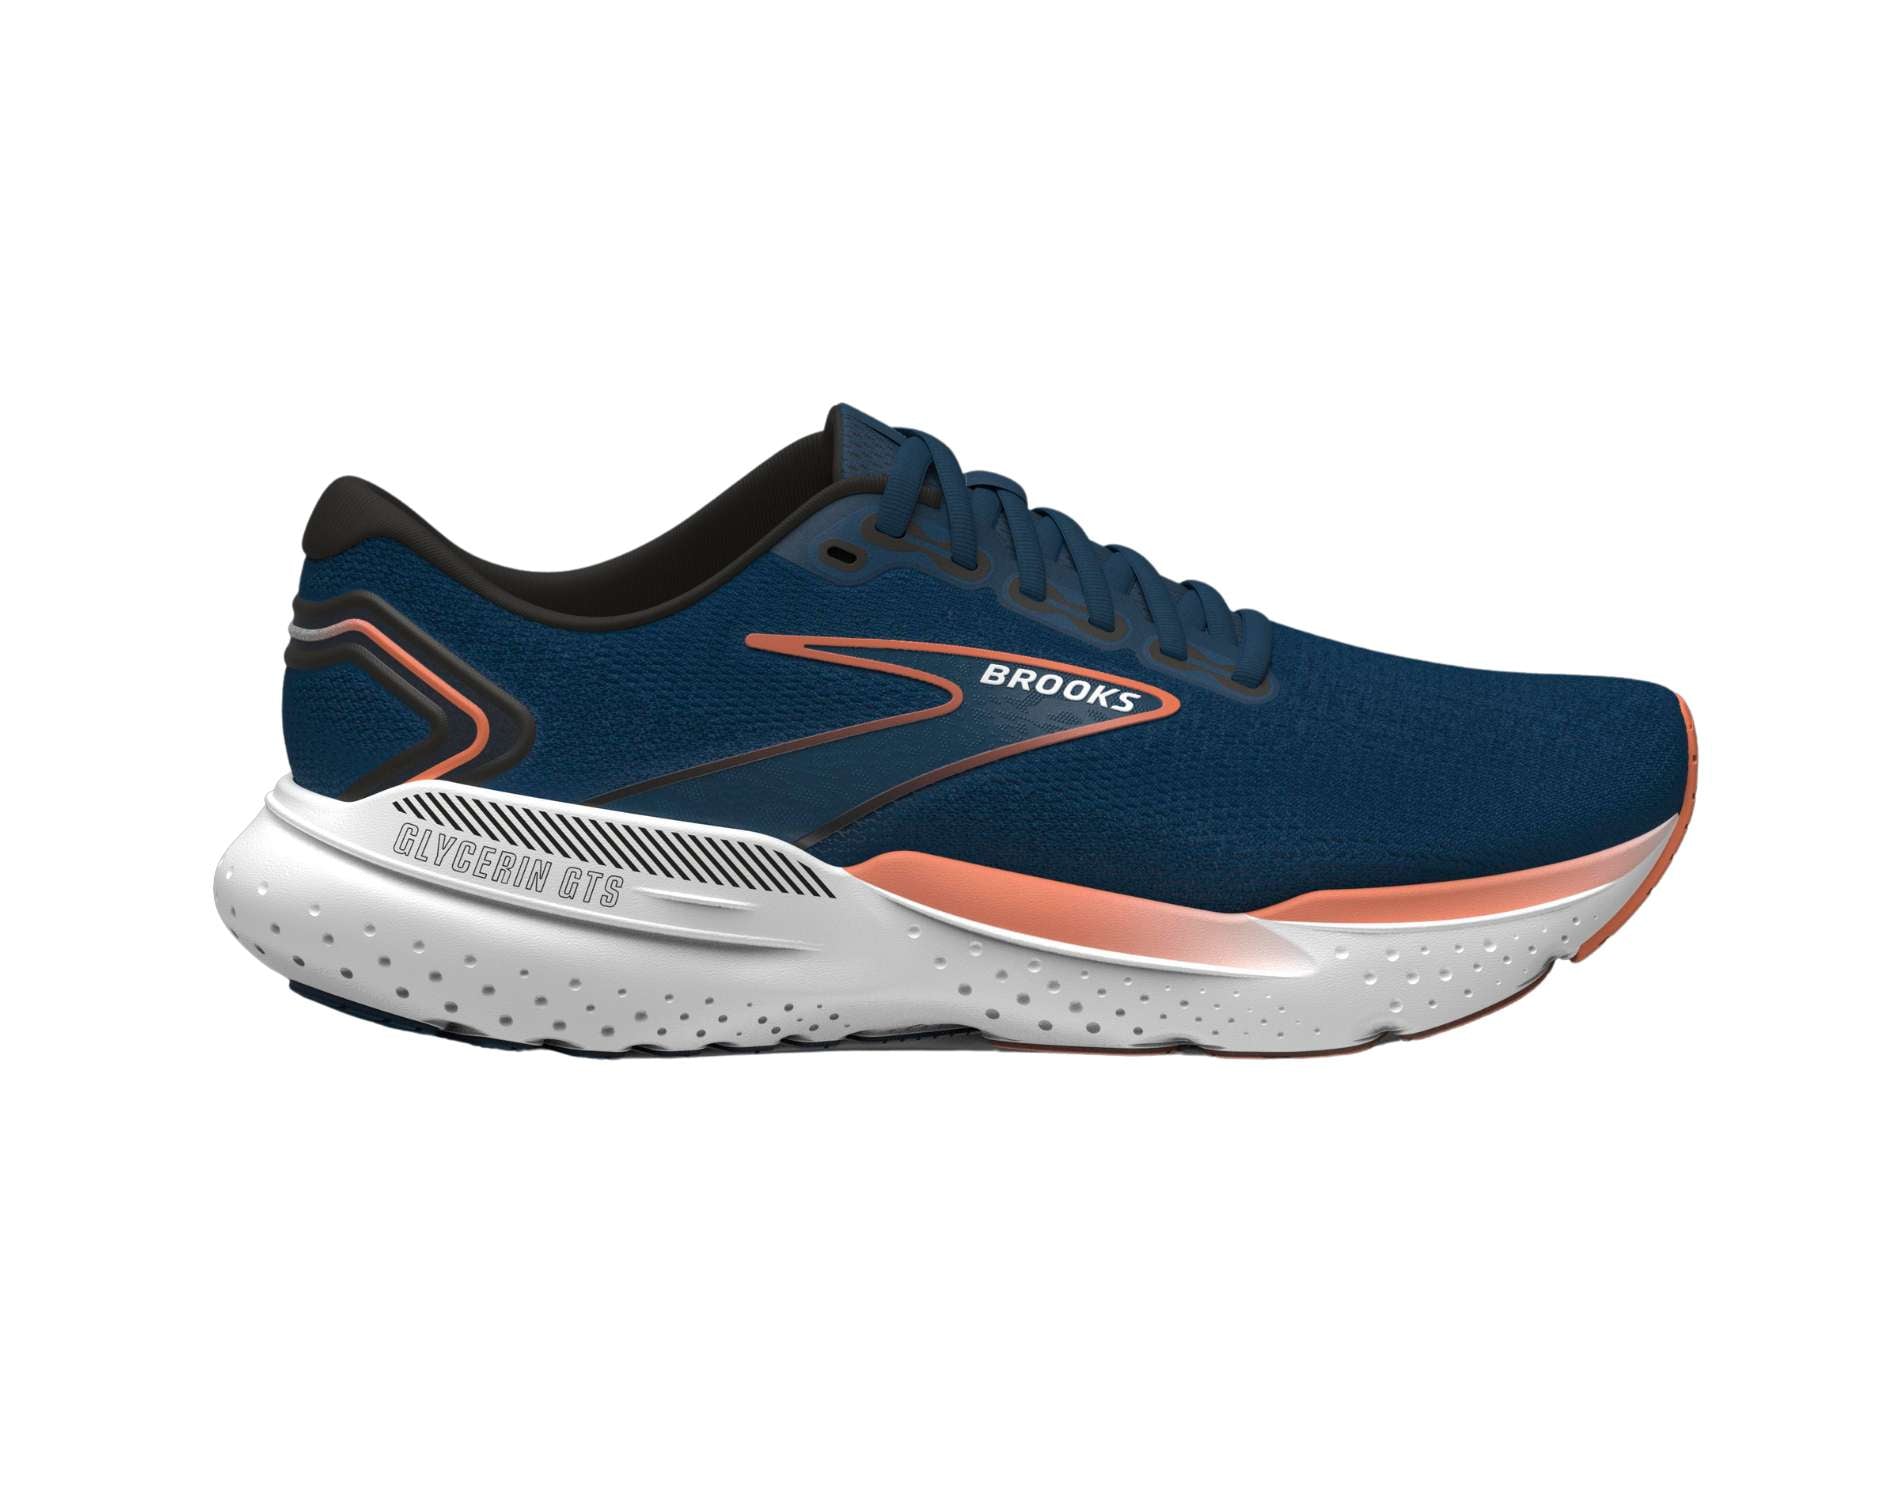 Glycerin 21 Men's Running Shoe | Brooks Running